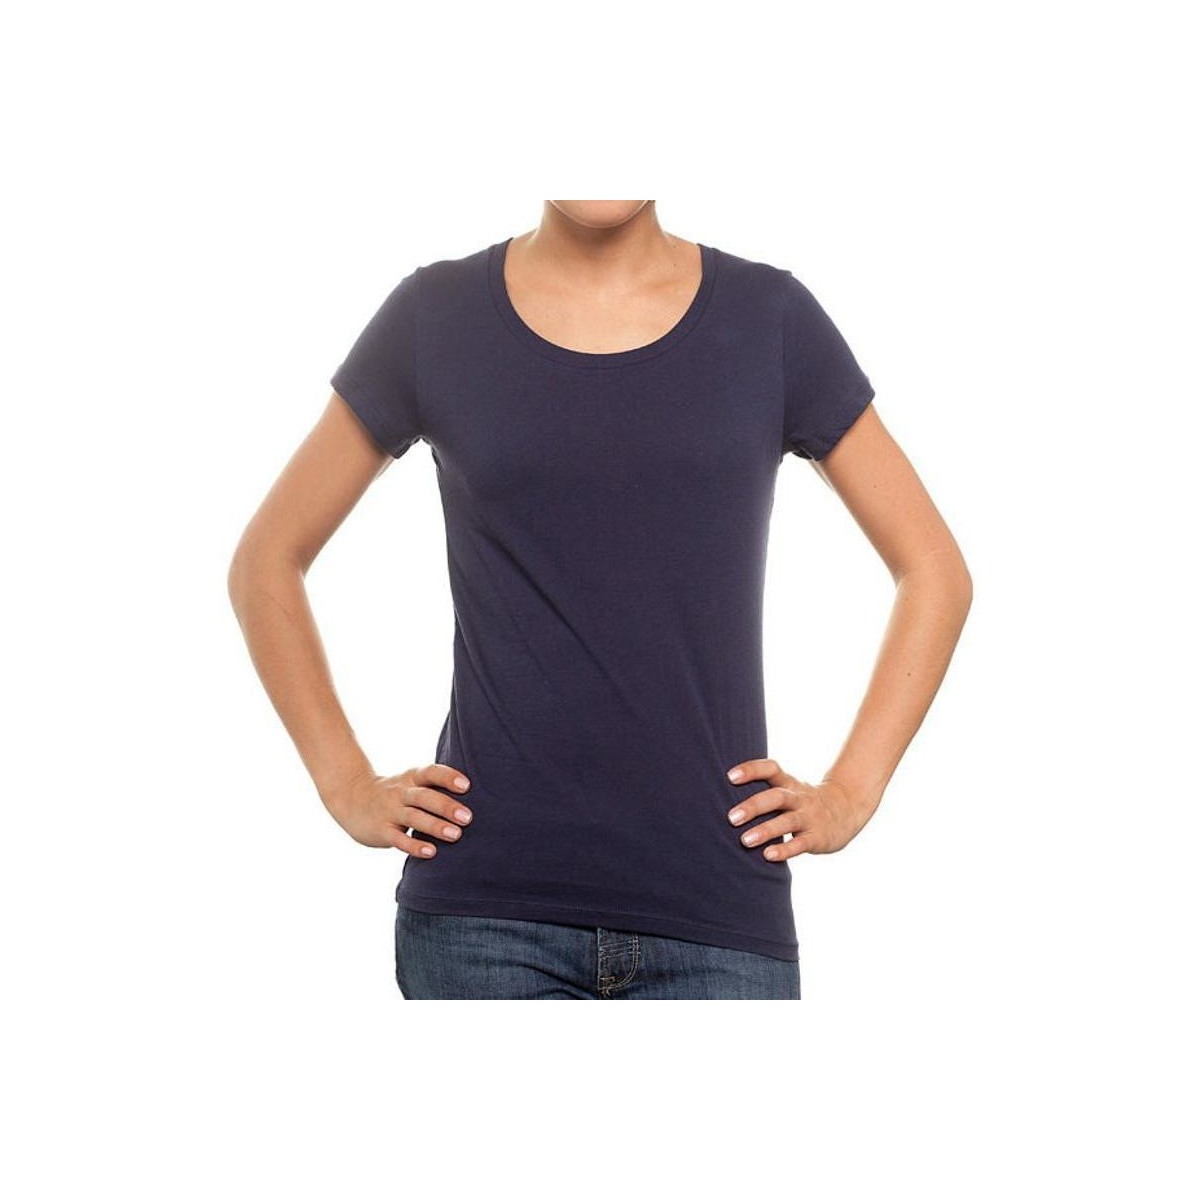 Ruhák Női Pólók / Galléros Pólók New Outwear 7227 Kék